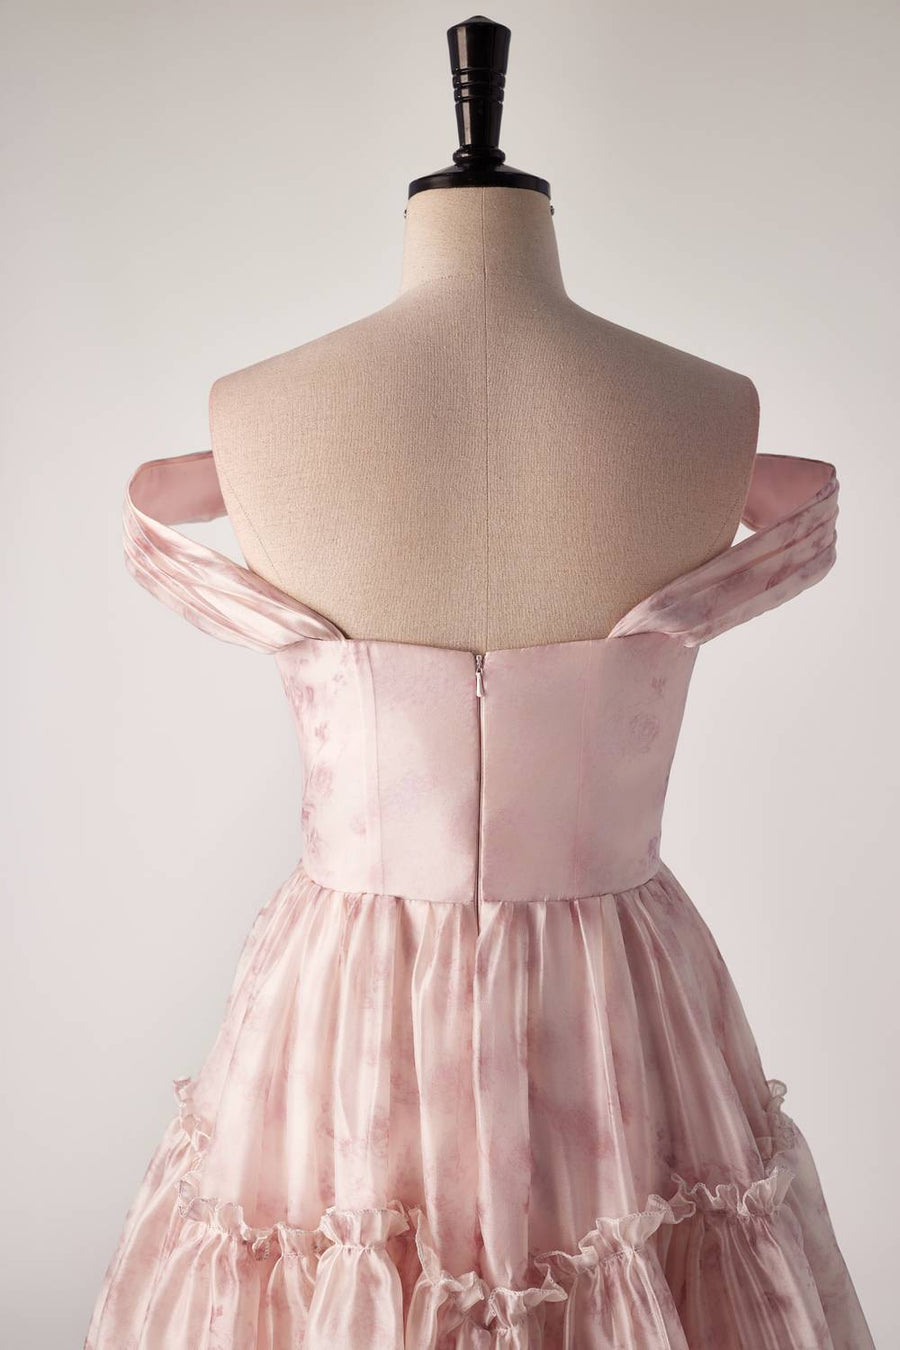 Off the Shoulder Pink Floral Pleated Short Dress